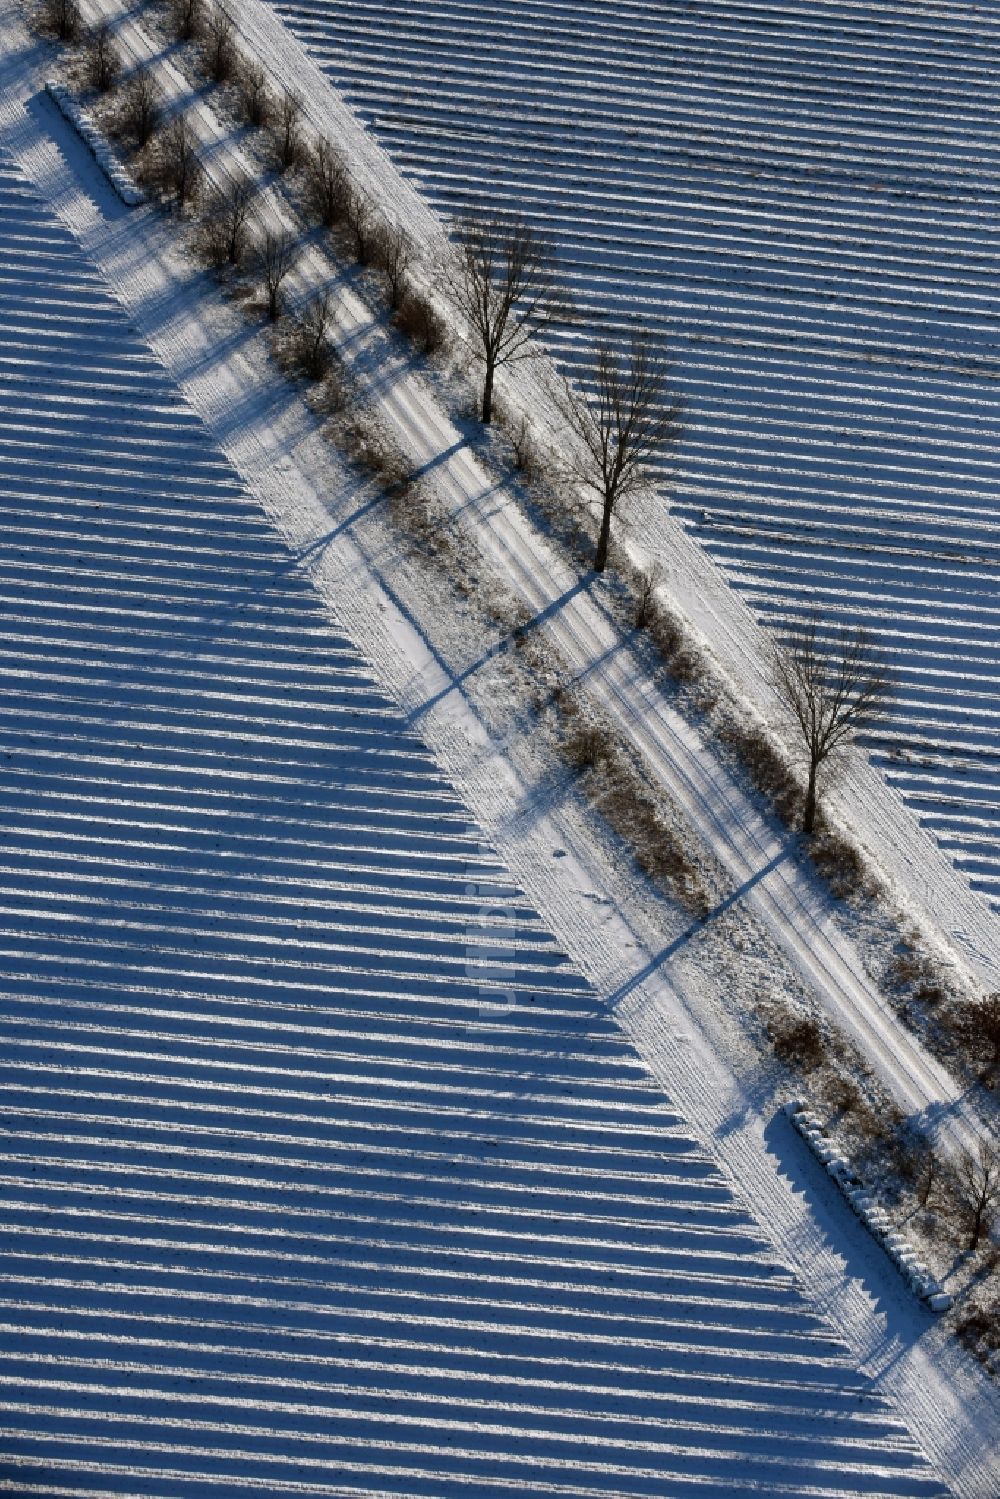 Luftaufnahme Roskow - Winterlich schneebedeckte Reihen mit Spargel- Anbau auf Feld- Flächen mit einer von Baumreihen gesäumten Allee, deren Bäume lange Schatten werfen in Lünow im Bundesland Brandenburg